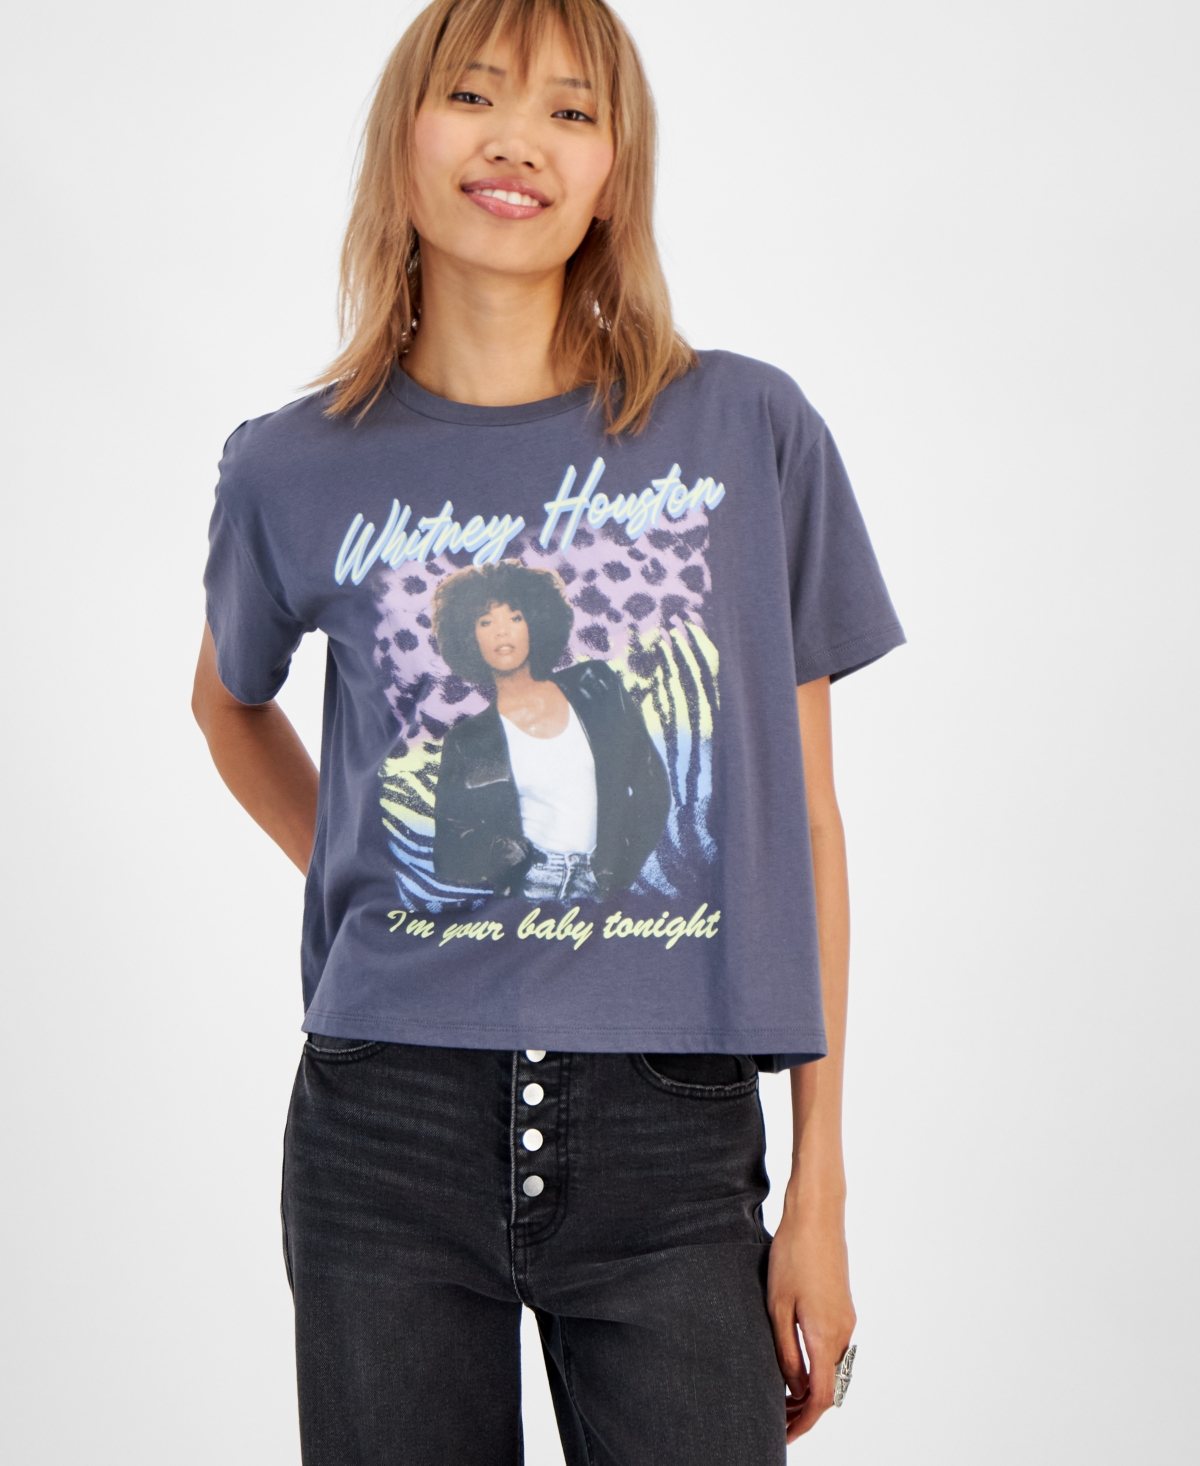 Juniors' Whitney Houston Graphic-Print T-Shirt - Gray